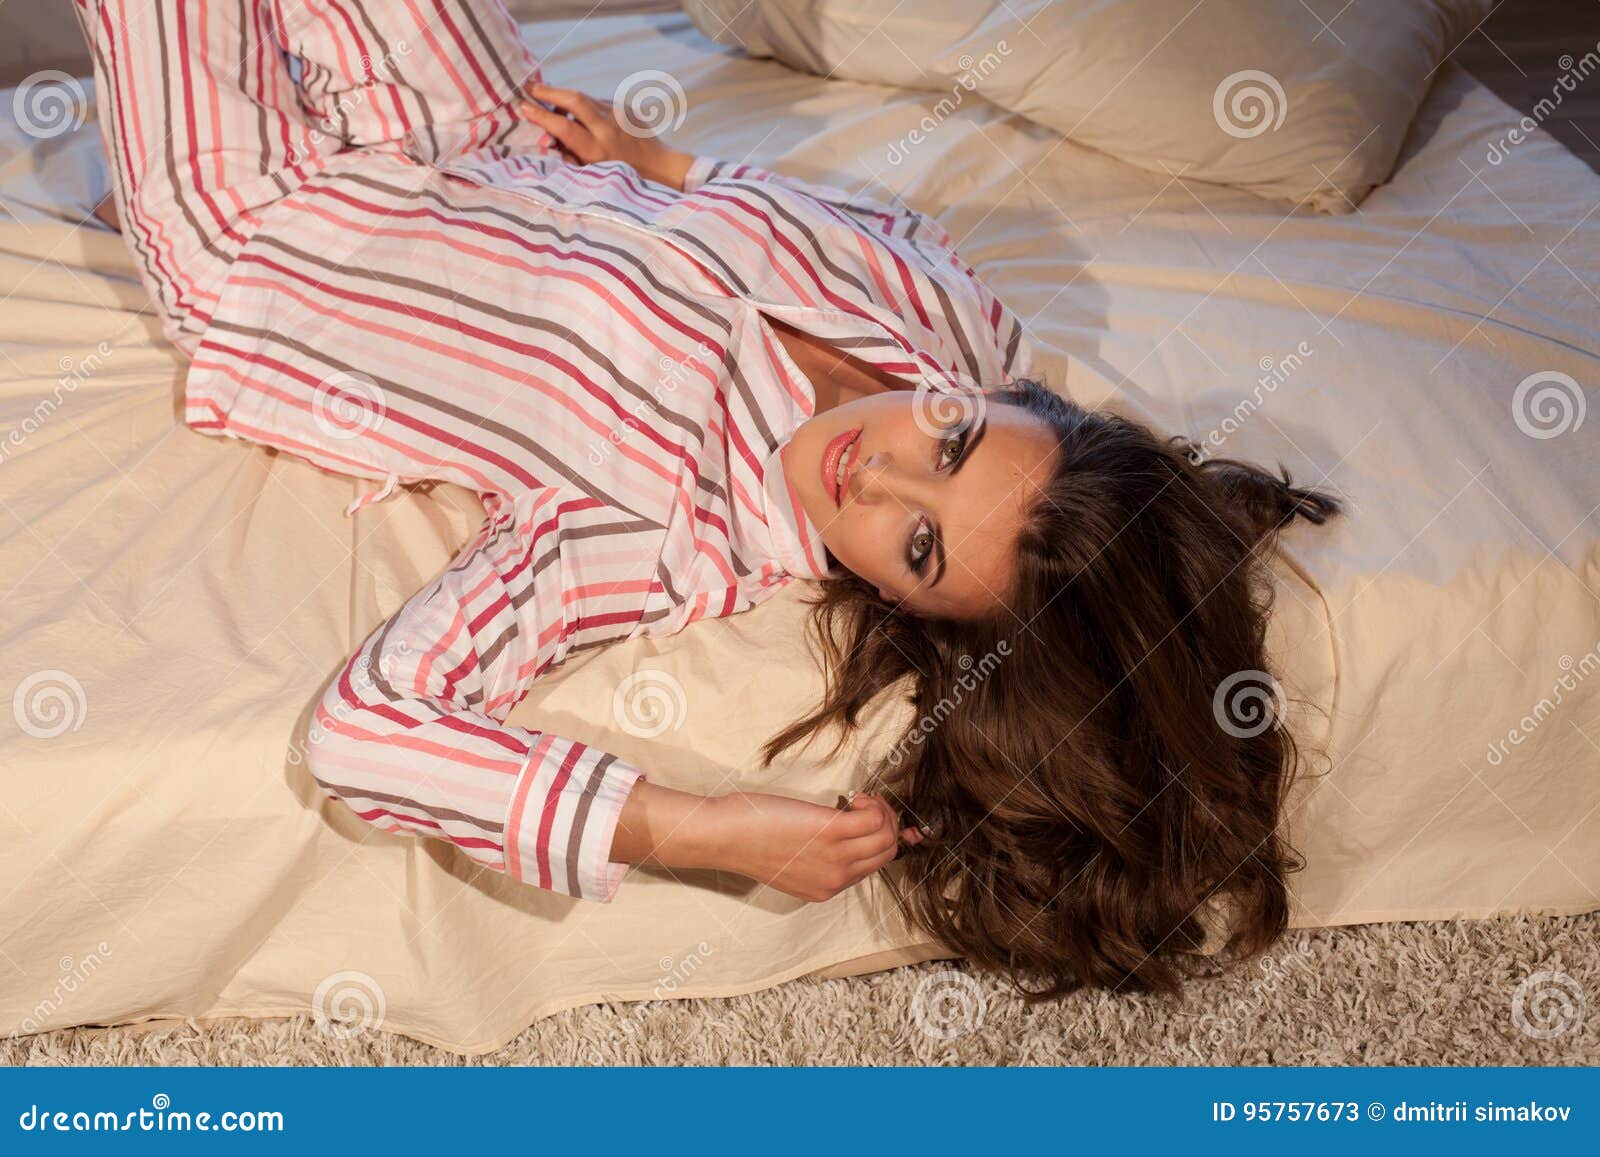 Пижаме ляжет. Девушка в пижаме. Девушка в постели в пижаме. Девушка в пижаме лежит. Фотосессия в пижаме на кровати.